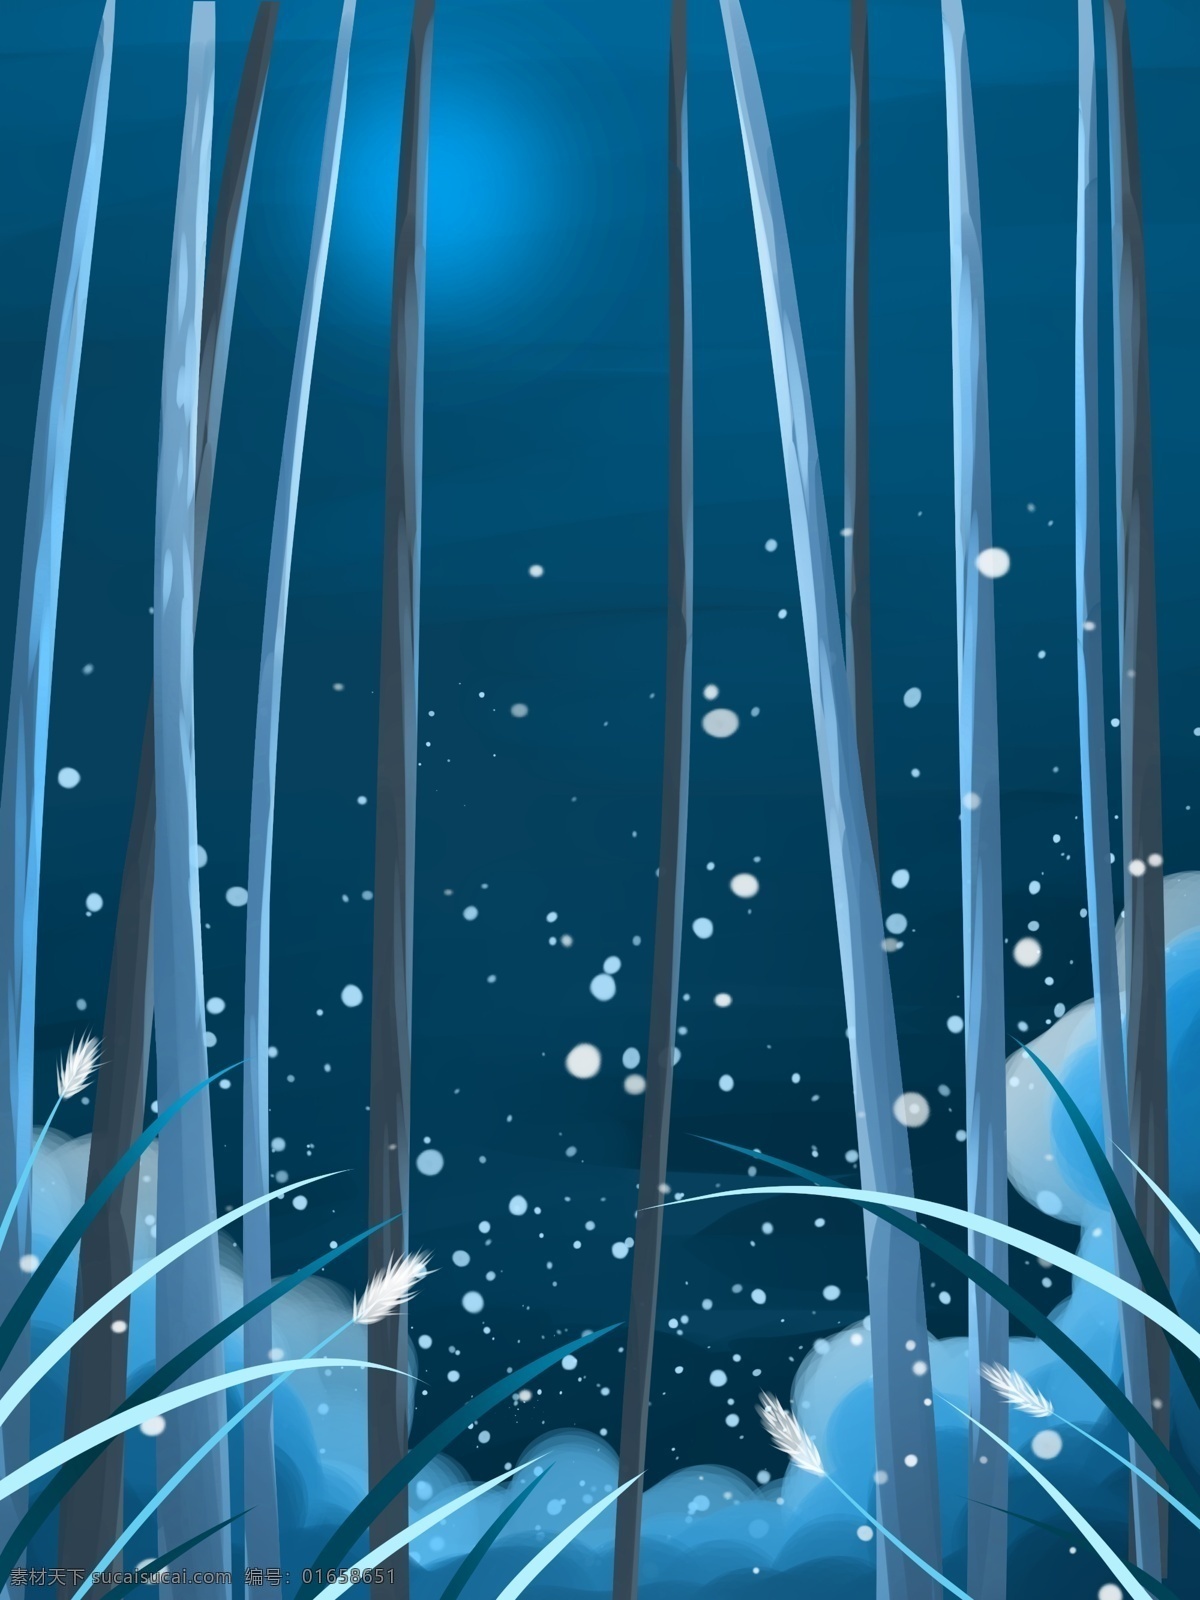 蓝色 卡 通风 树林 雪景 背景 传统节气 冬天背景 背景psd 小清新 手绘背景 下雪 树林背景 夜晚背景